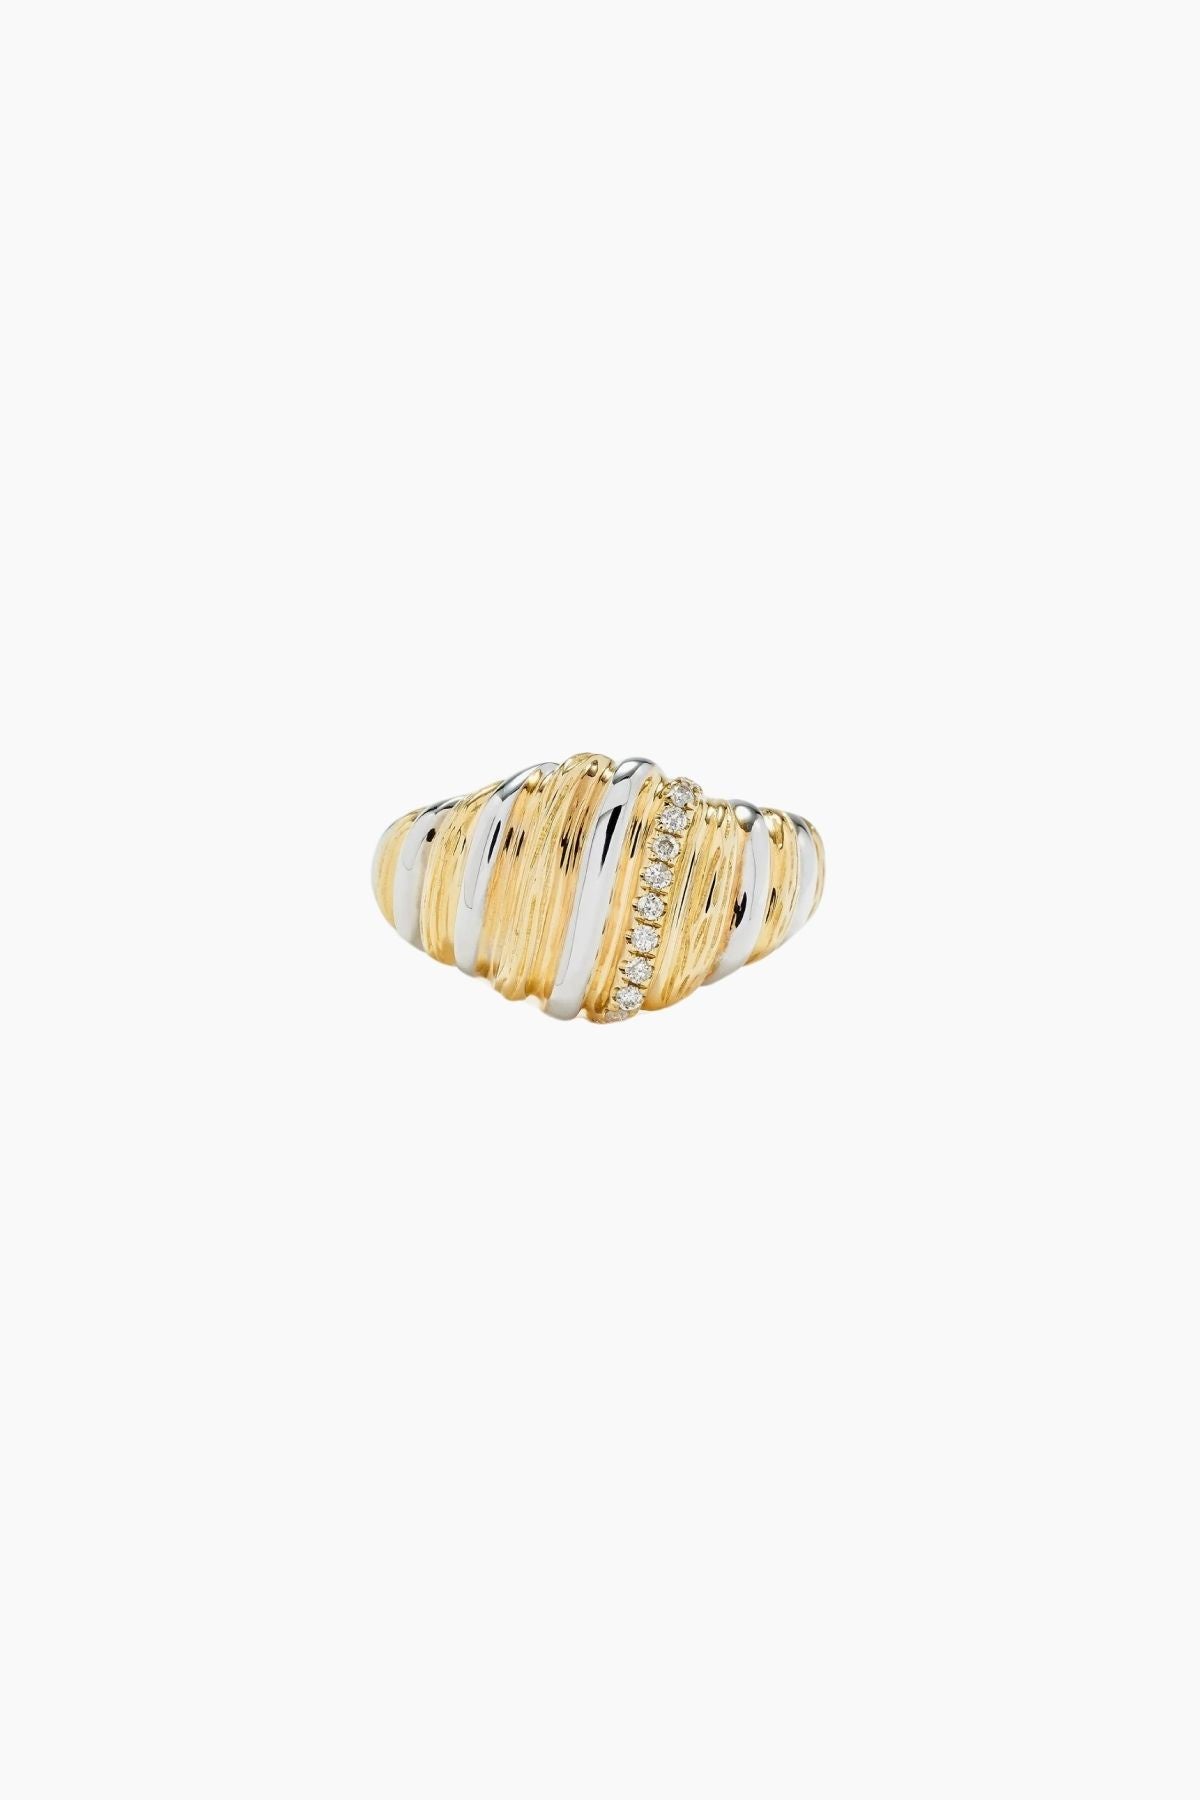 Yvonne Léon Chevaliere Gaufrette Diamond Ring - Yellow/ White Gold